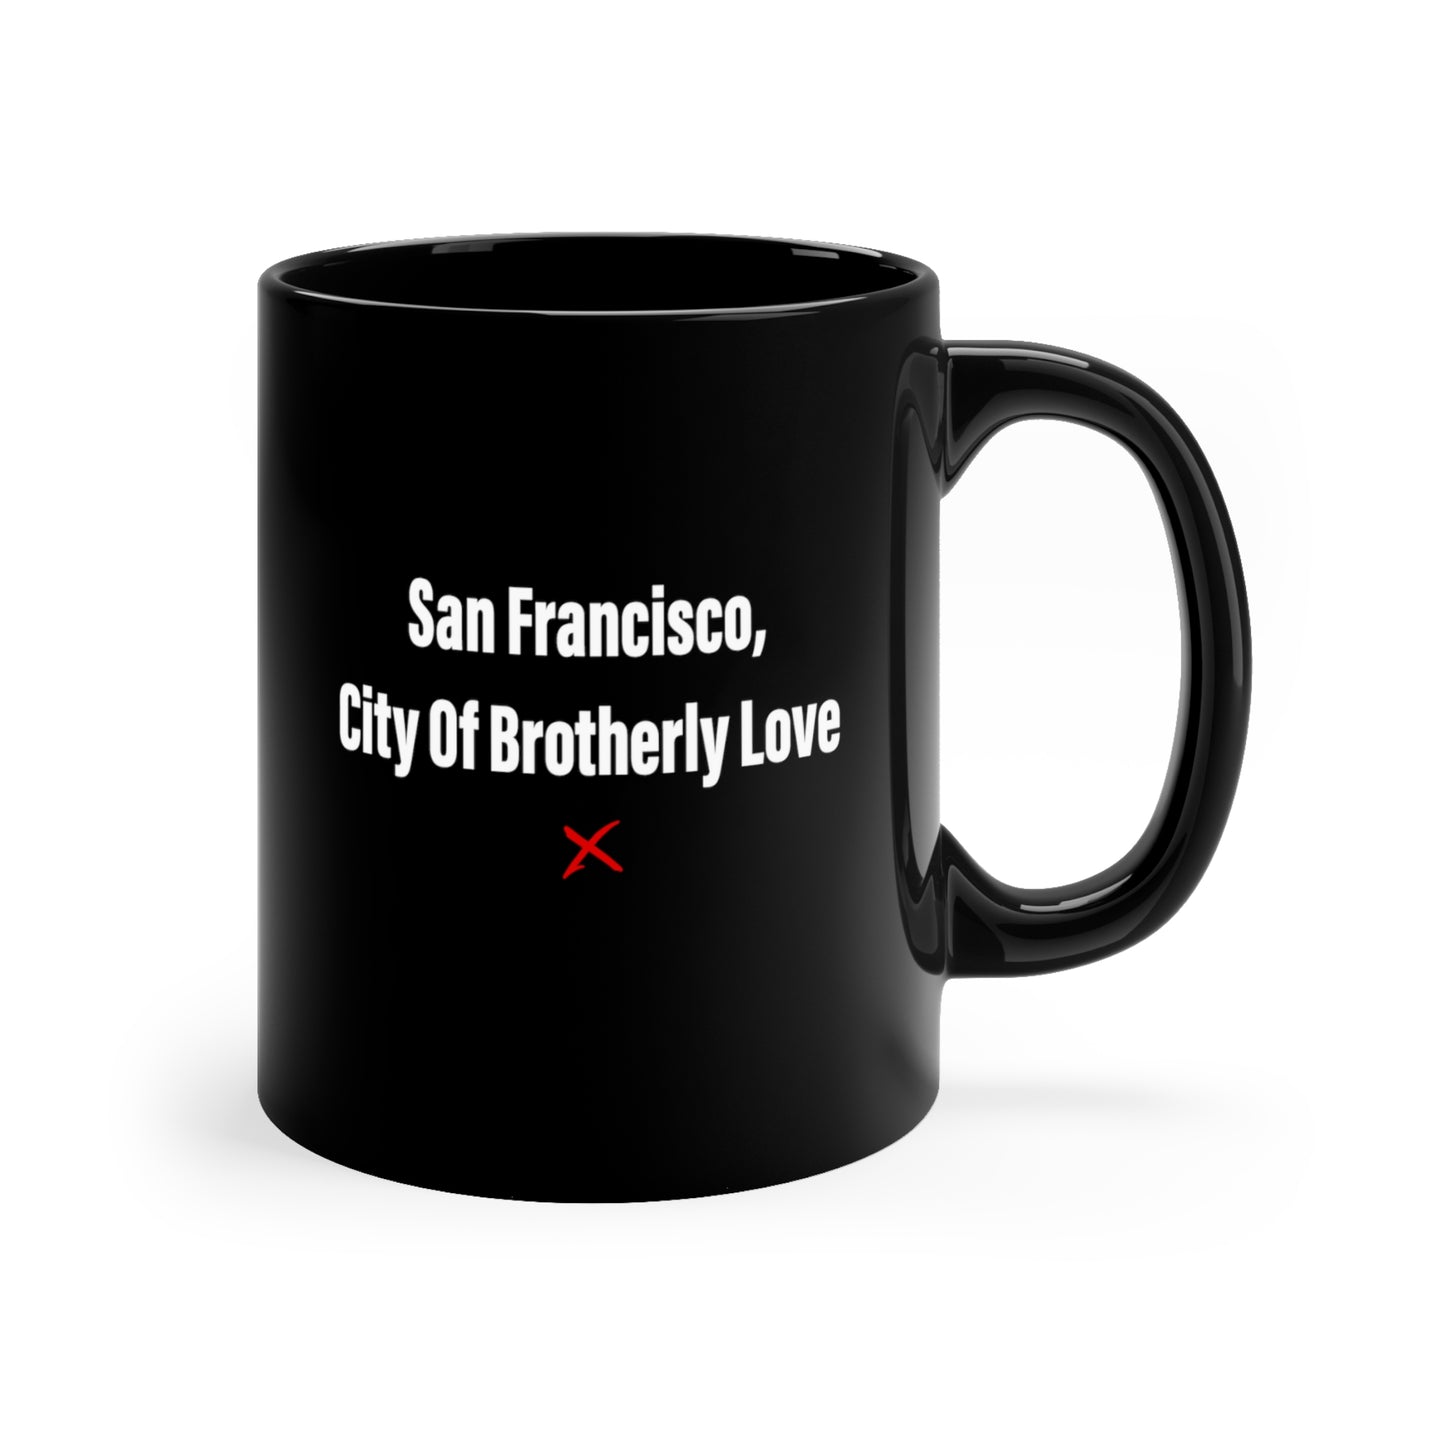 San Francisco, City Of Brotherly Love - Mug